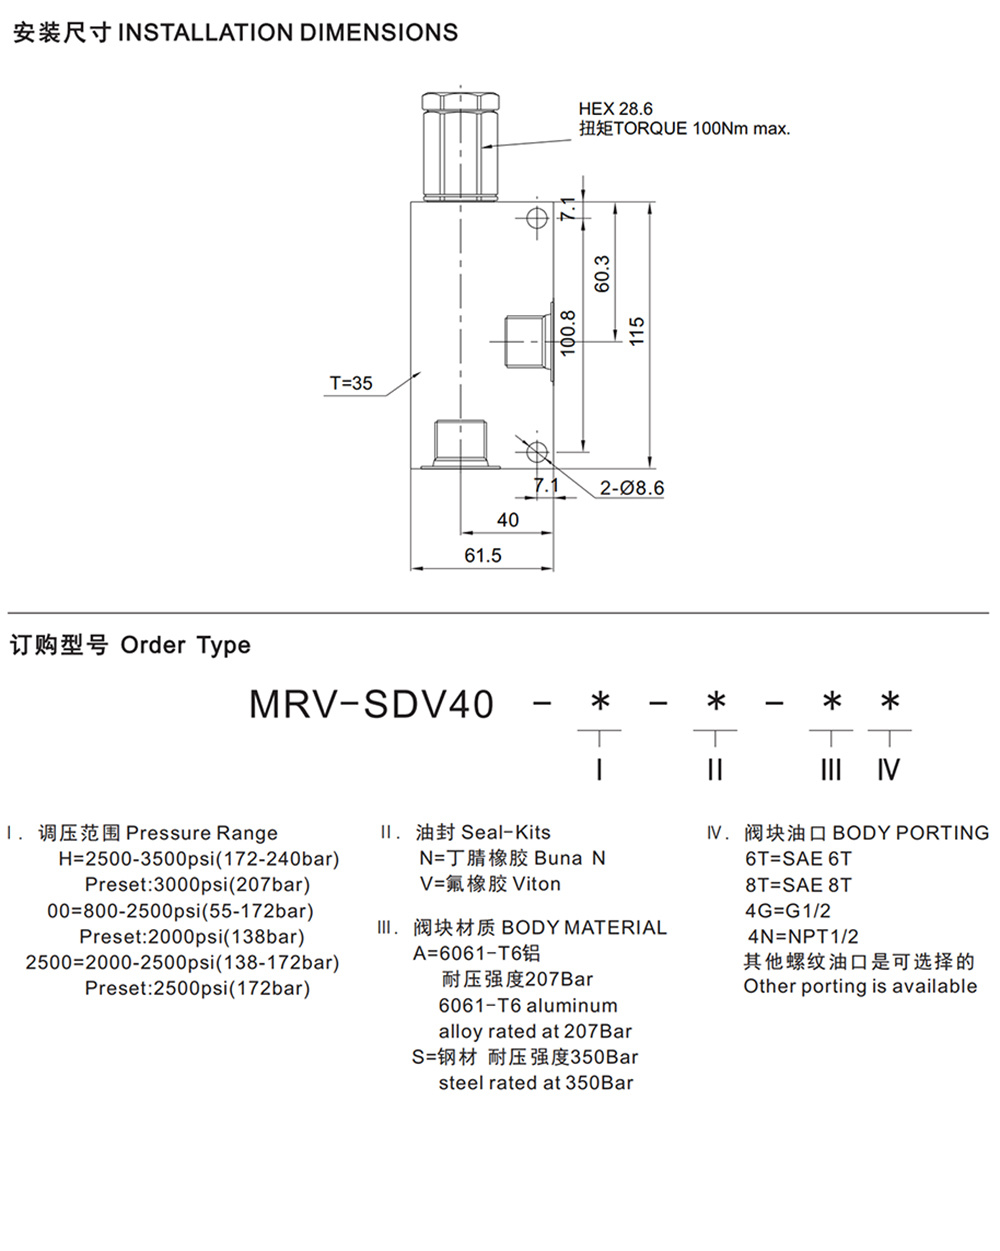 MRV-SDV40